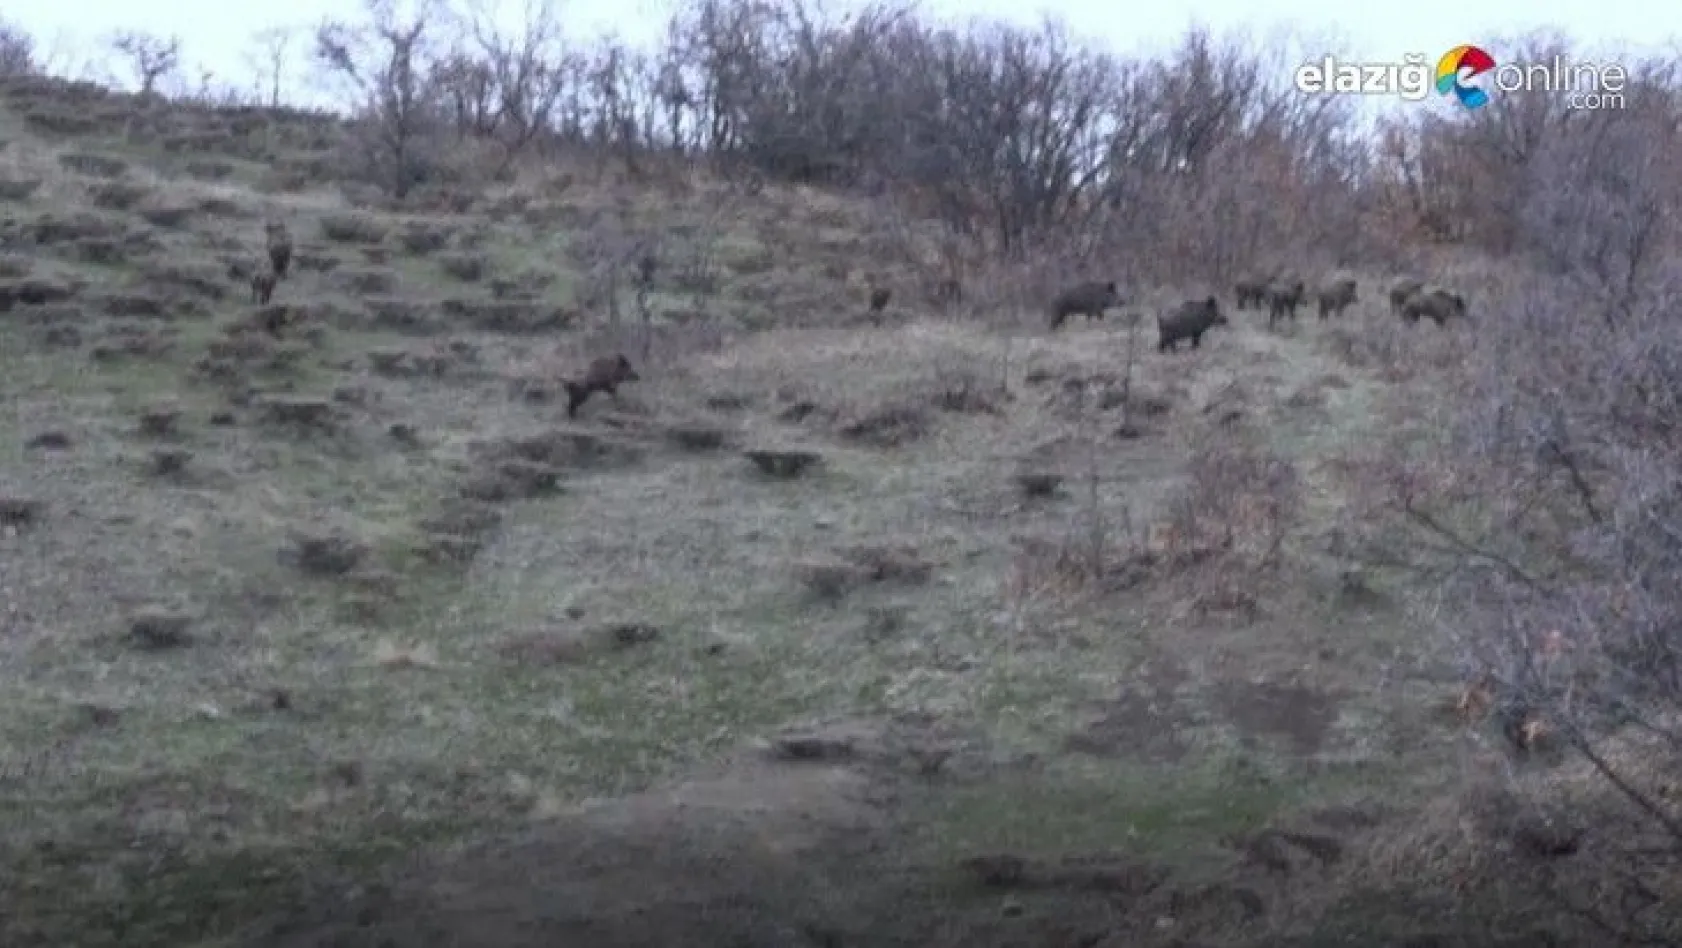 Tunceli'de sürü halinde yola inen domuz sürüsü görüntülendi